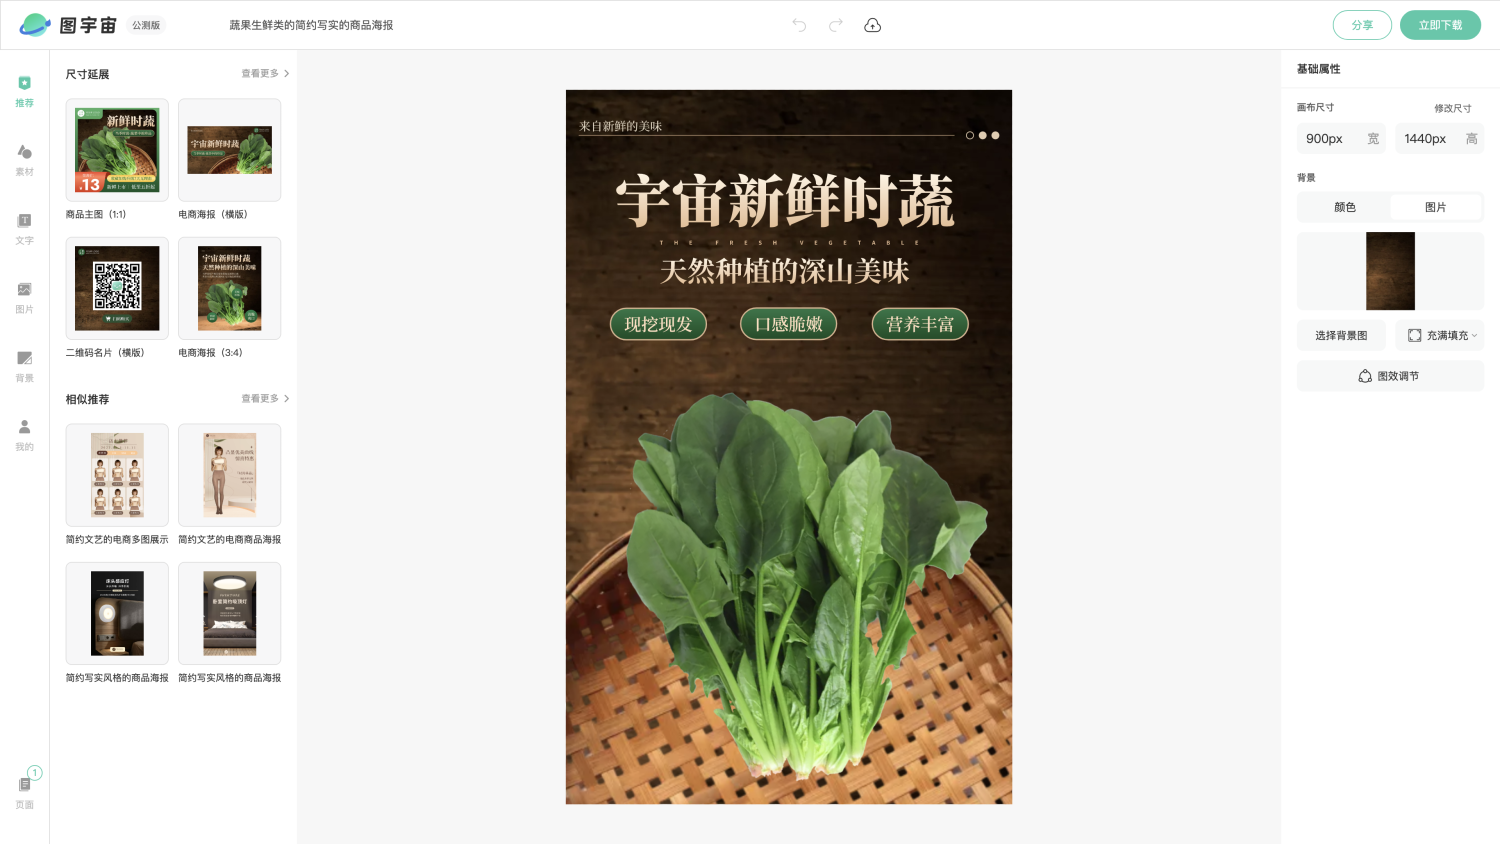 图宇宙-编辑器-蔬果生鲜类的简约写实的商品海报